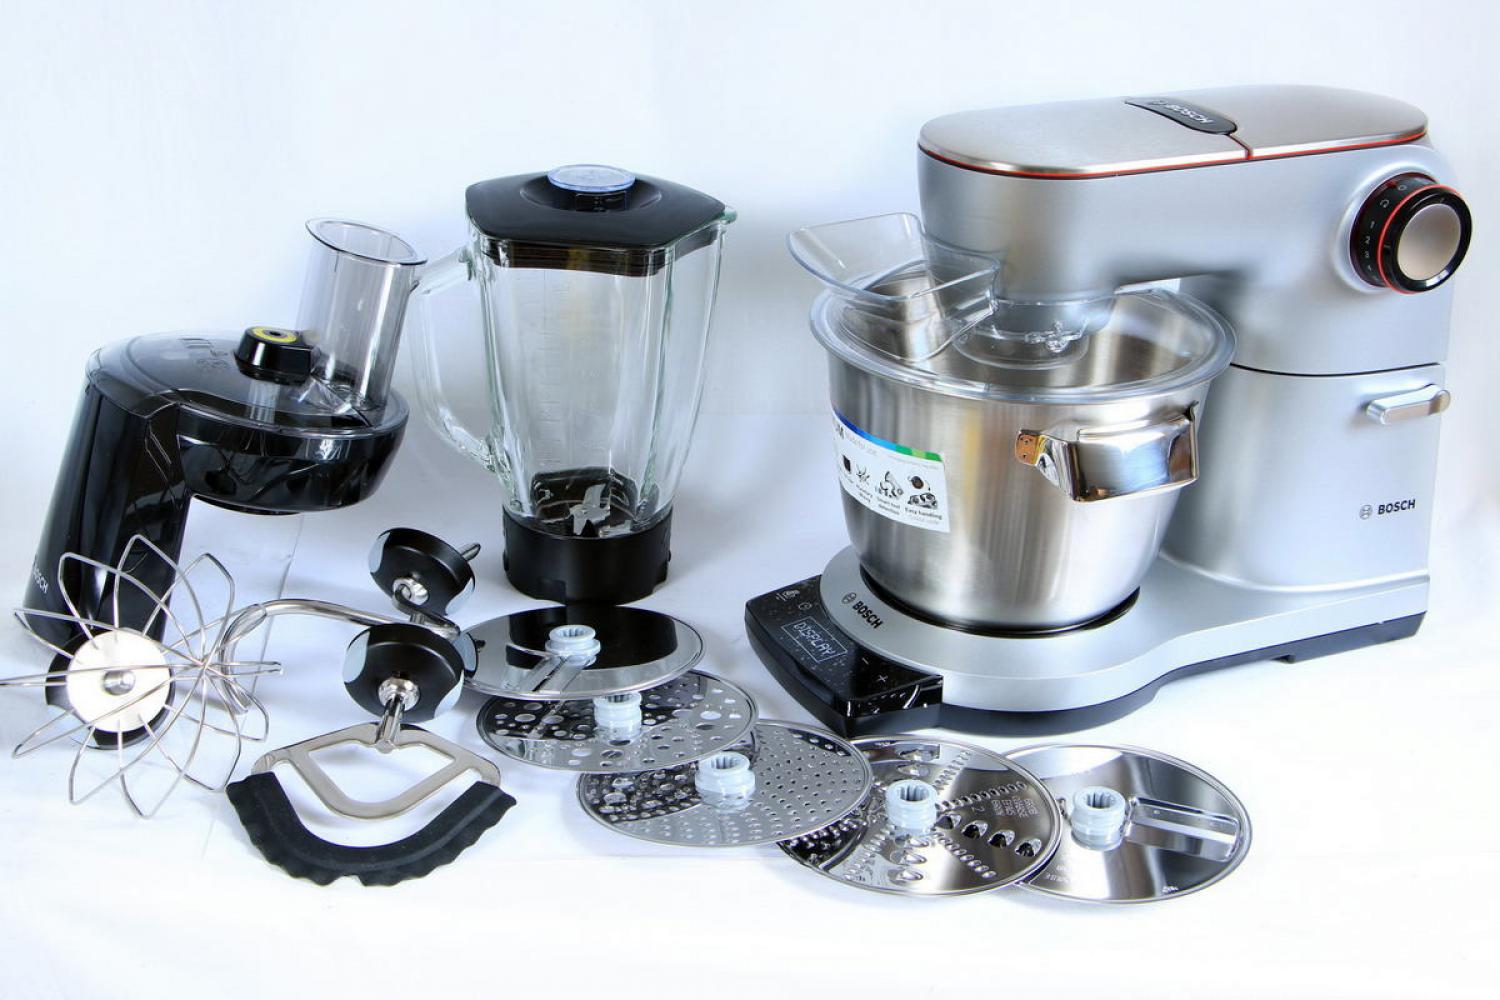 Bosch OptiMUM 9 Küchenmaschine 1500W 5,5l + Zubehör Silber MUM9DT5S41 20